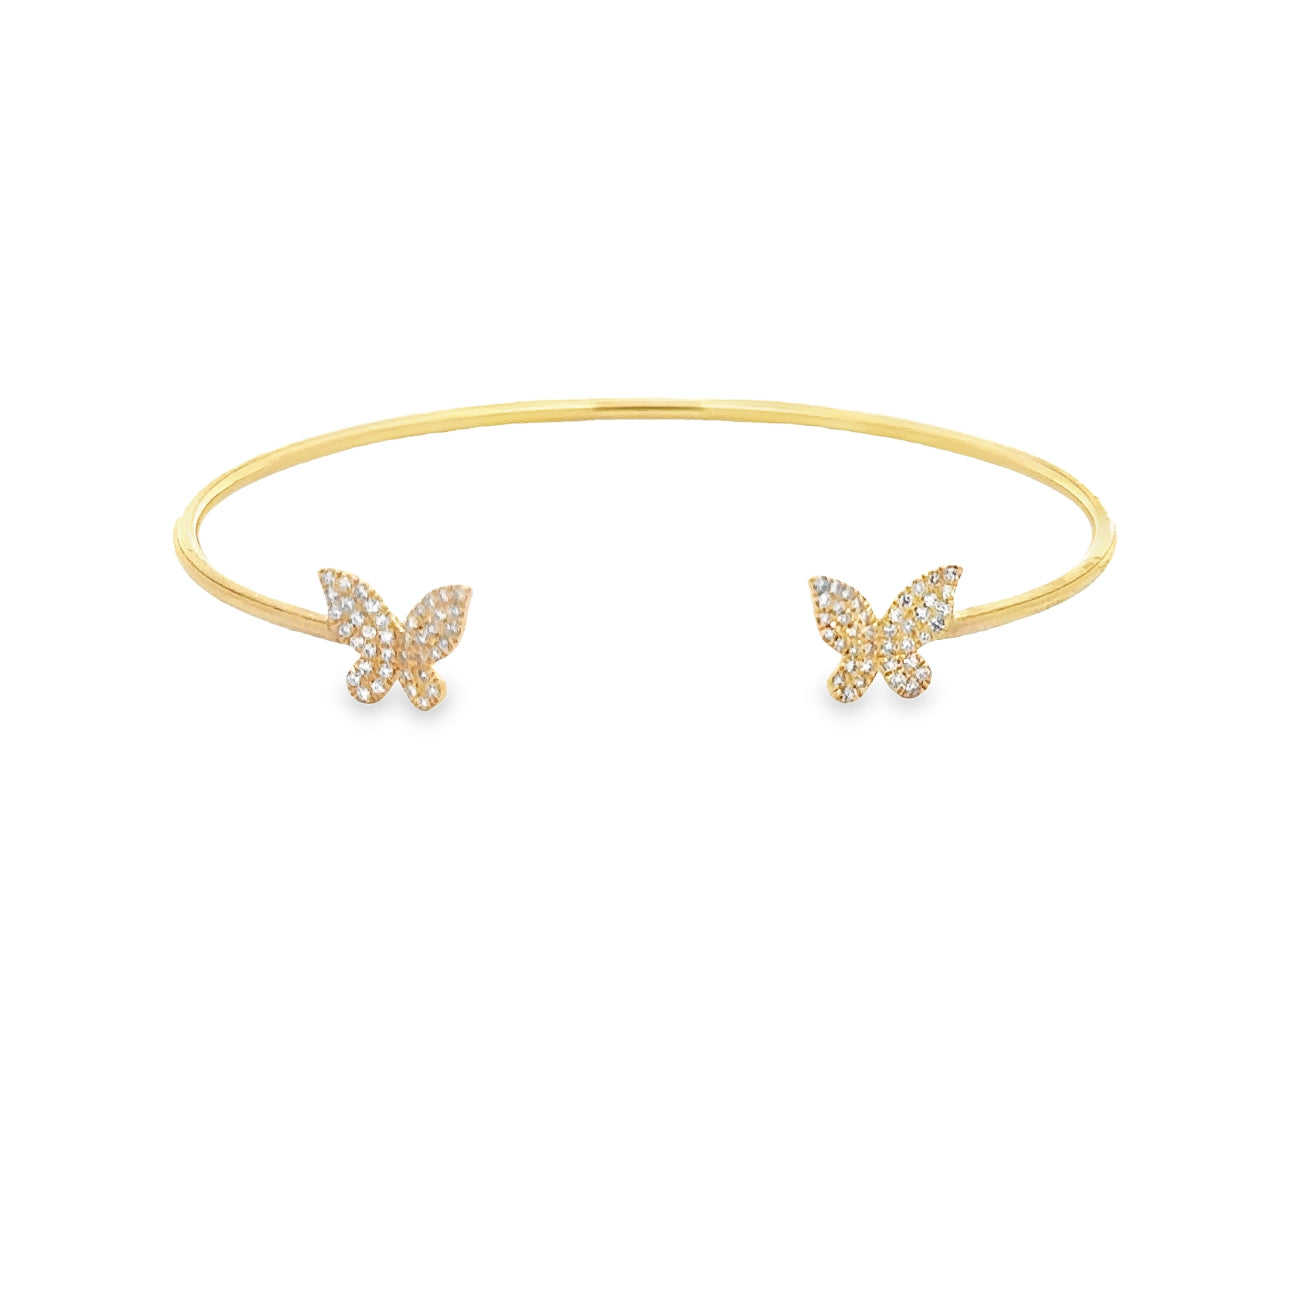 WD1287 Butterfly Open Cuff Bracelet